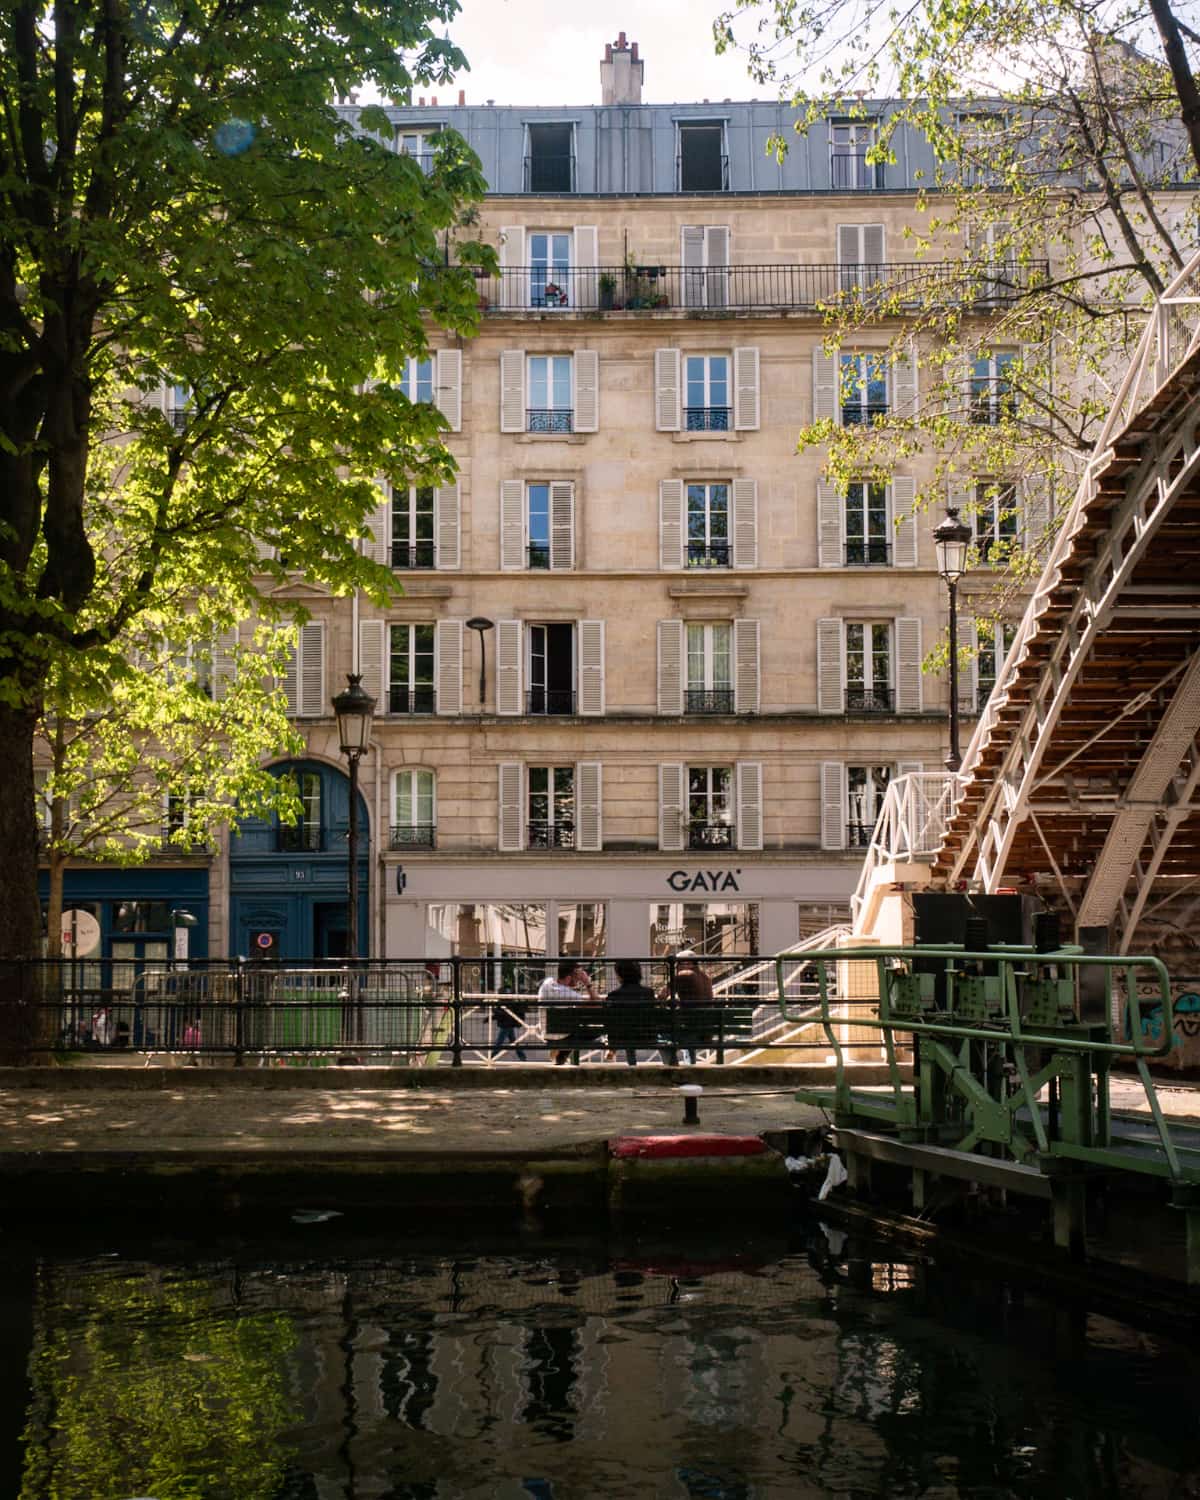 Paris buildings along the Canal Saint Martin